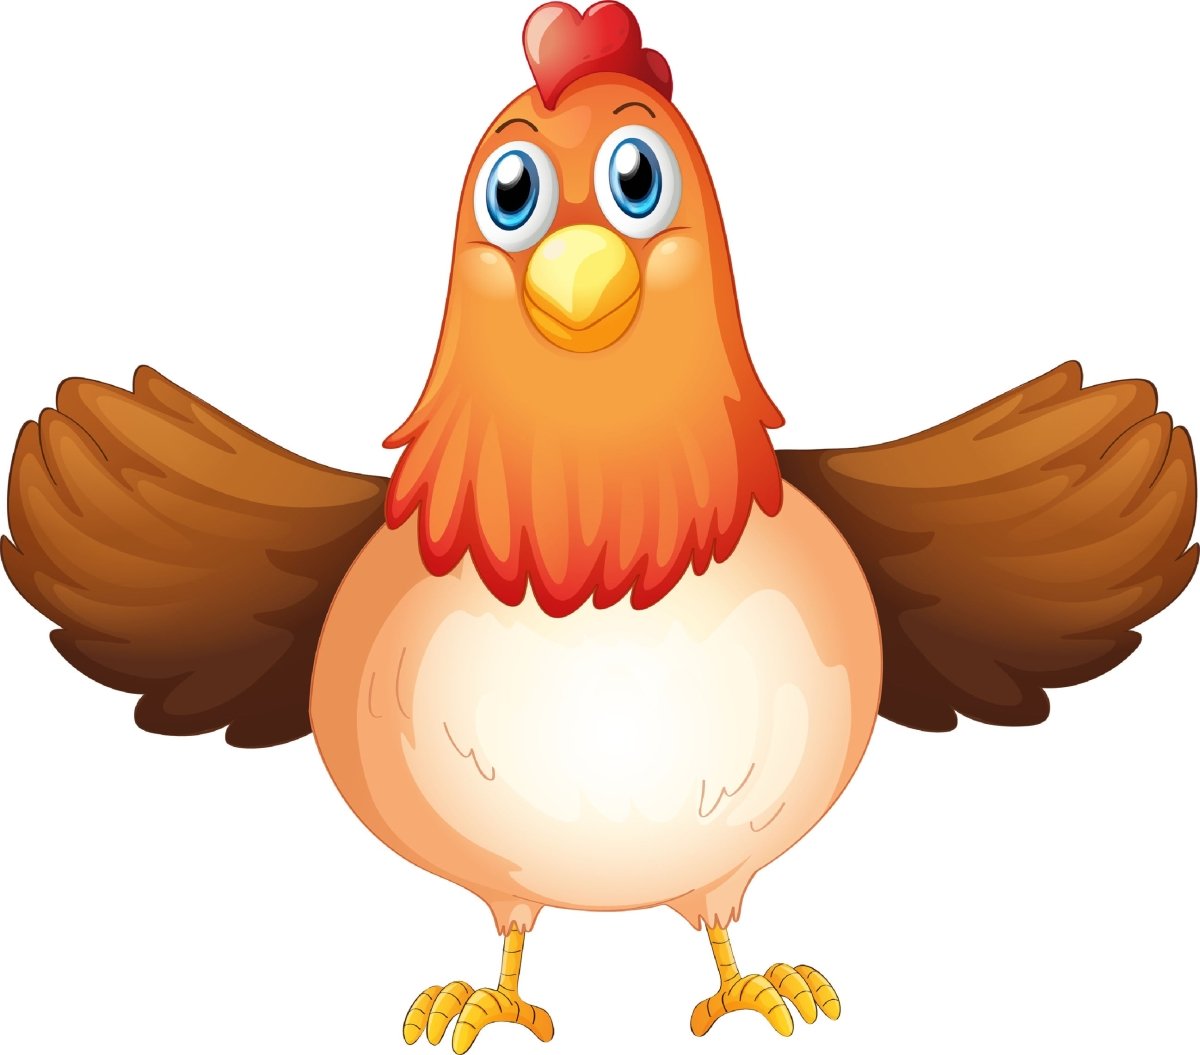 Wandsticker Huhn mit ausgebreiteten Flügeln, Hahn WS00000162 - Bild 4